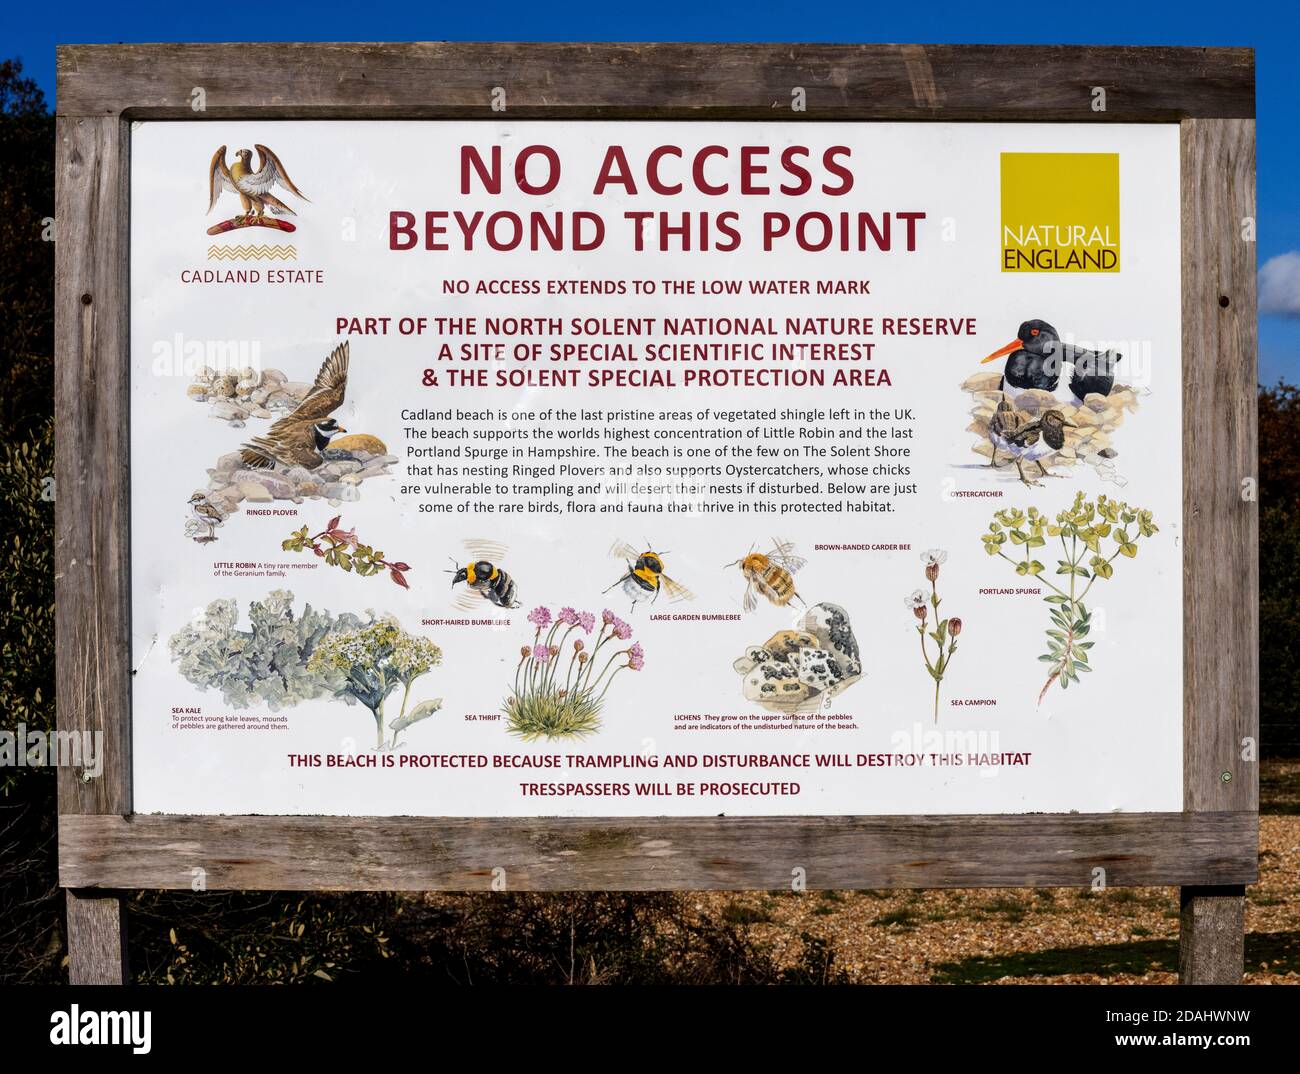 North Solent nature Reserve aucun signe d'accès à la limite de Lepe Beach avec Cadland Beach, Cadland, New Forest, Hampshire, Angleterre, Royaume-Uni. Banque D'Images